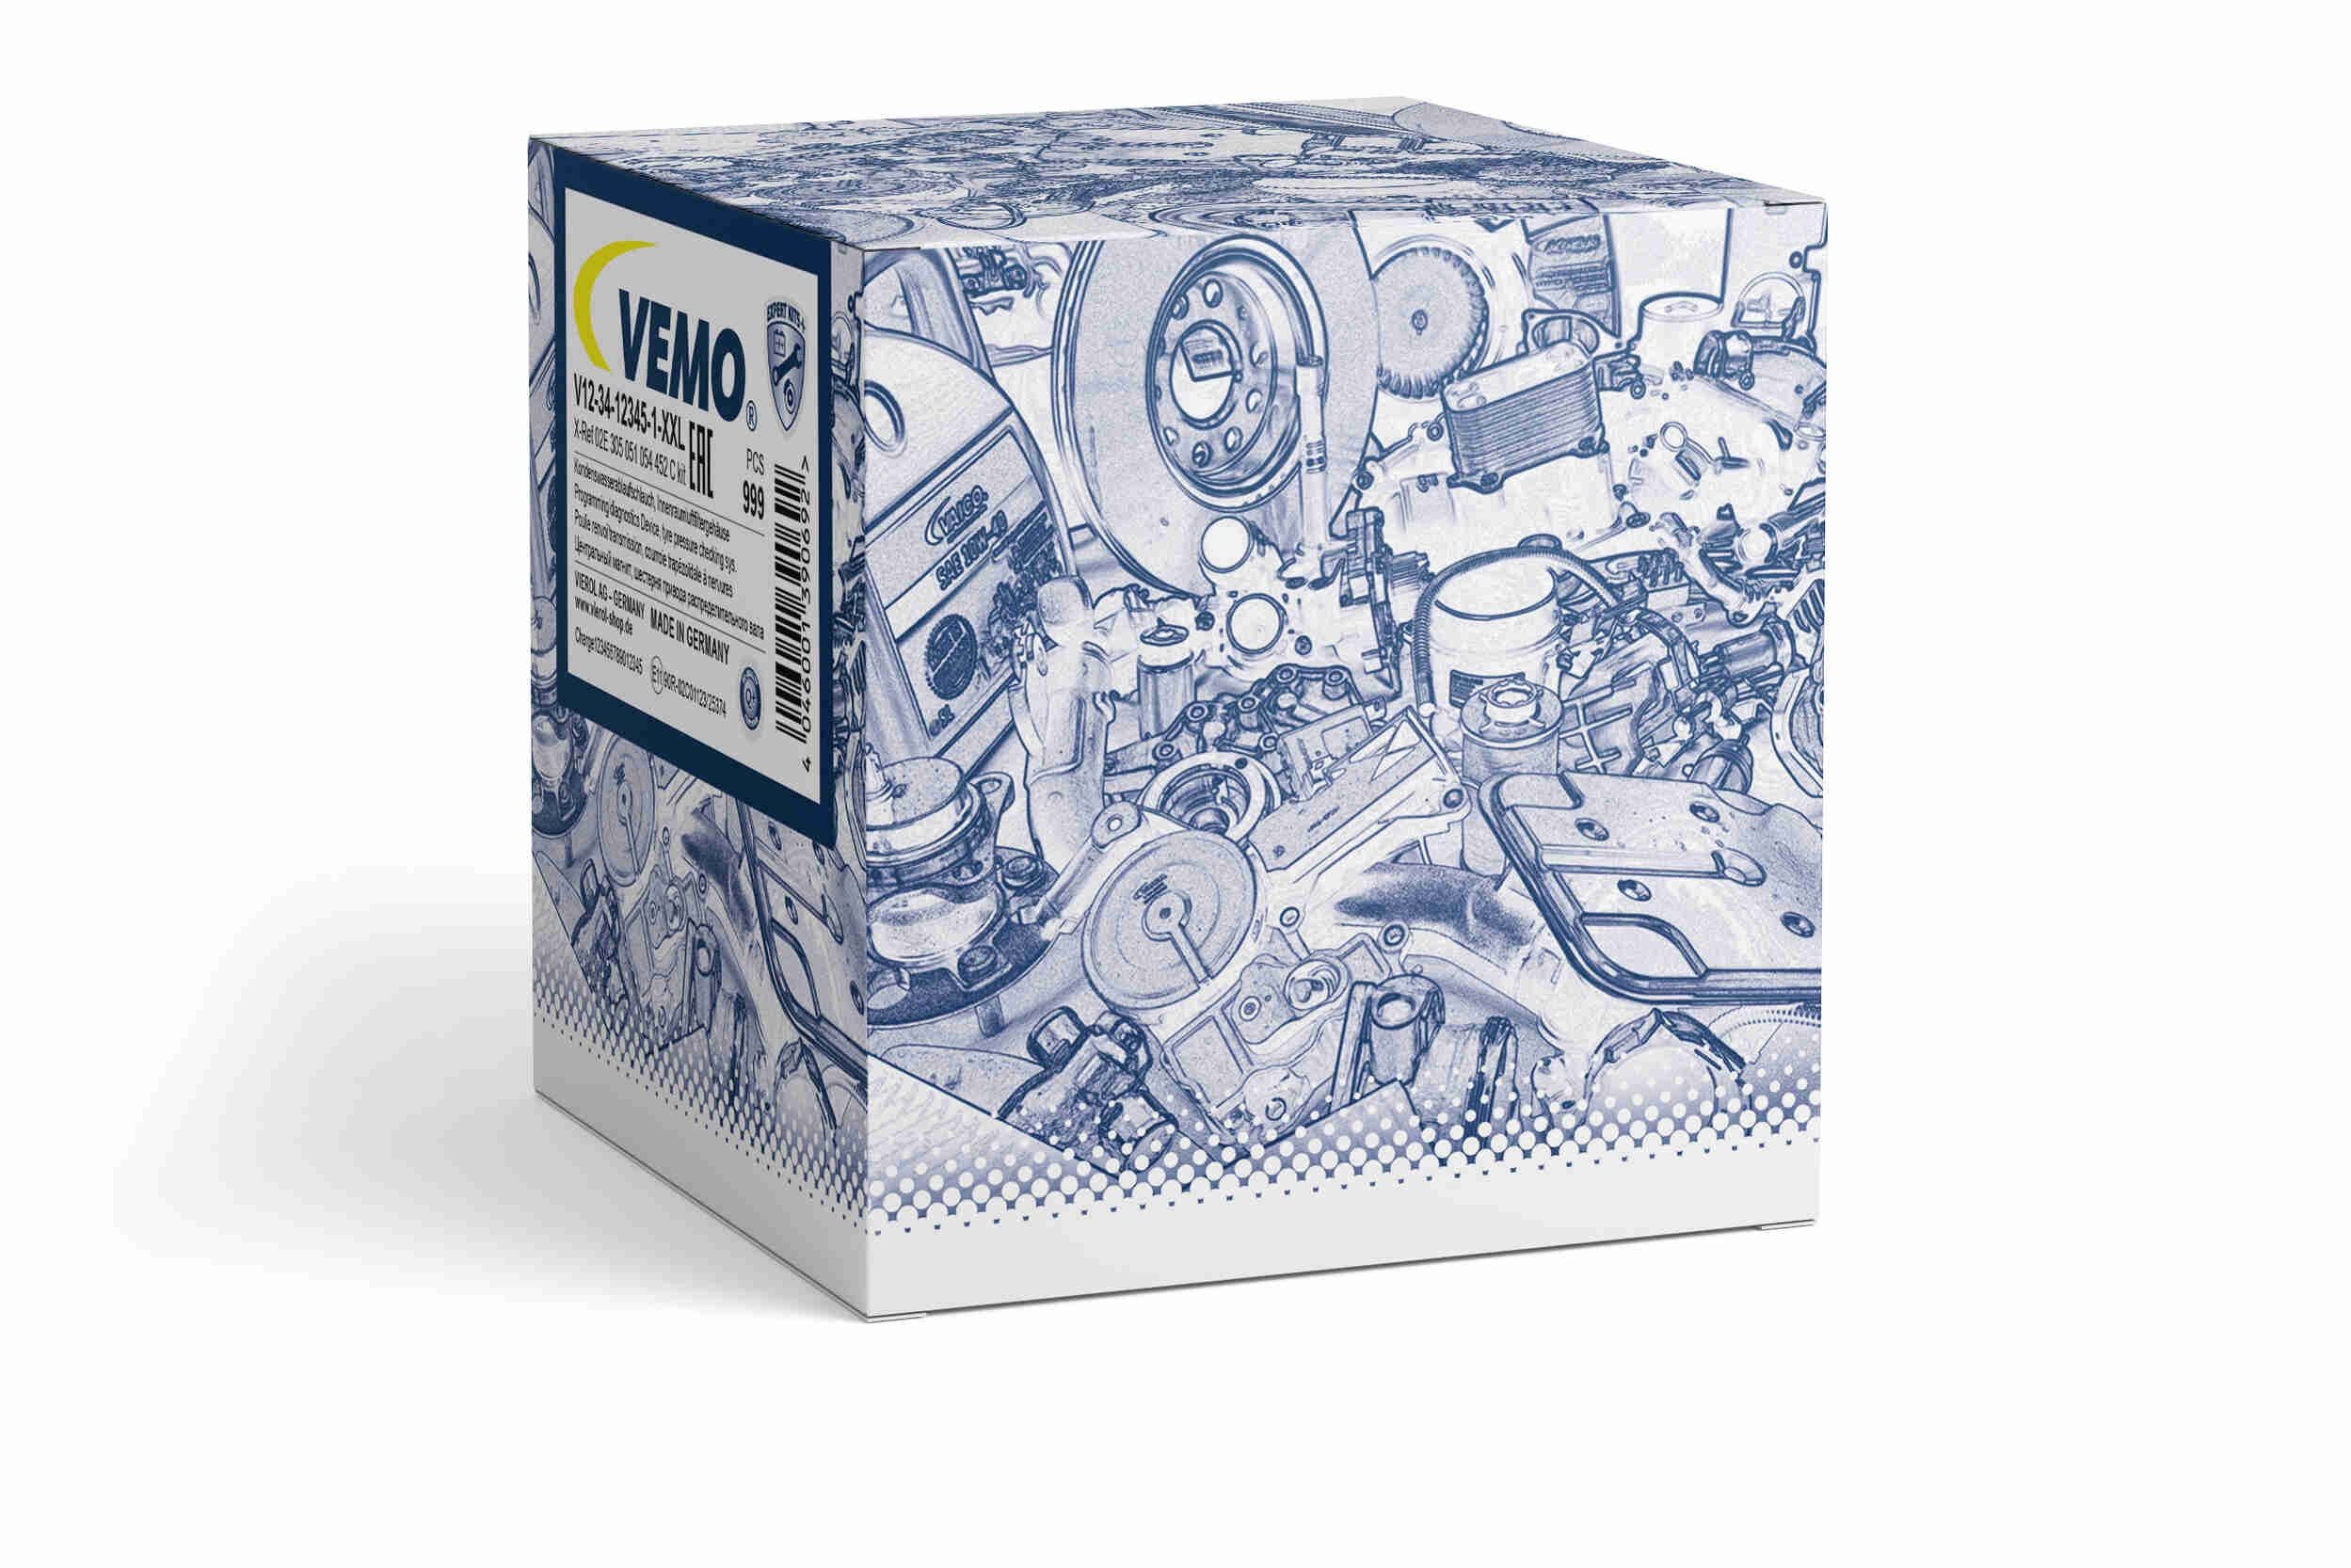 VEMO VEV10-77-1047 - 1K5 81 Control, central locking system Vehicle Fuel Filler Flap, Q+, original equipment manufacturer quality